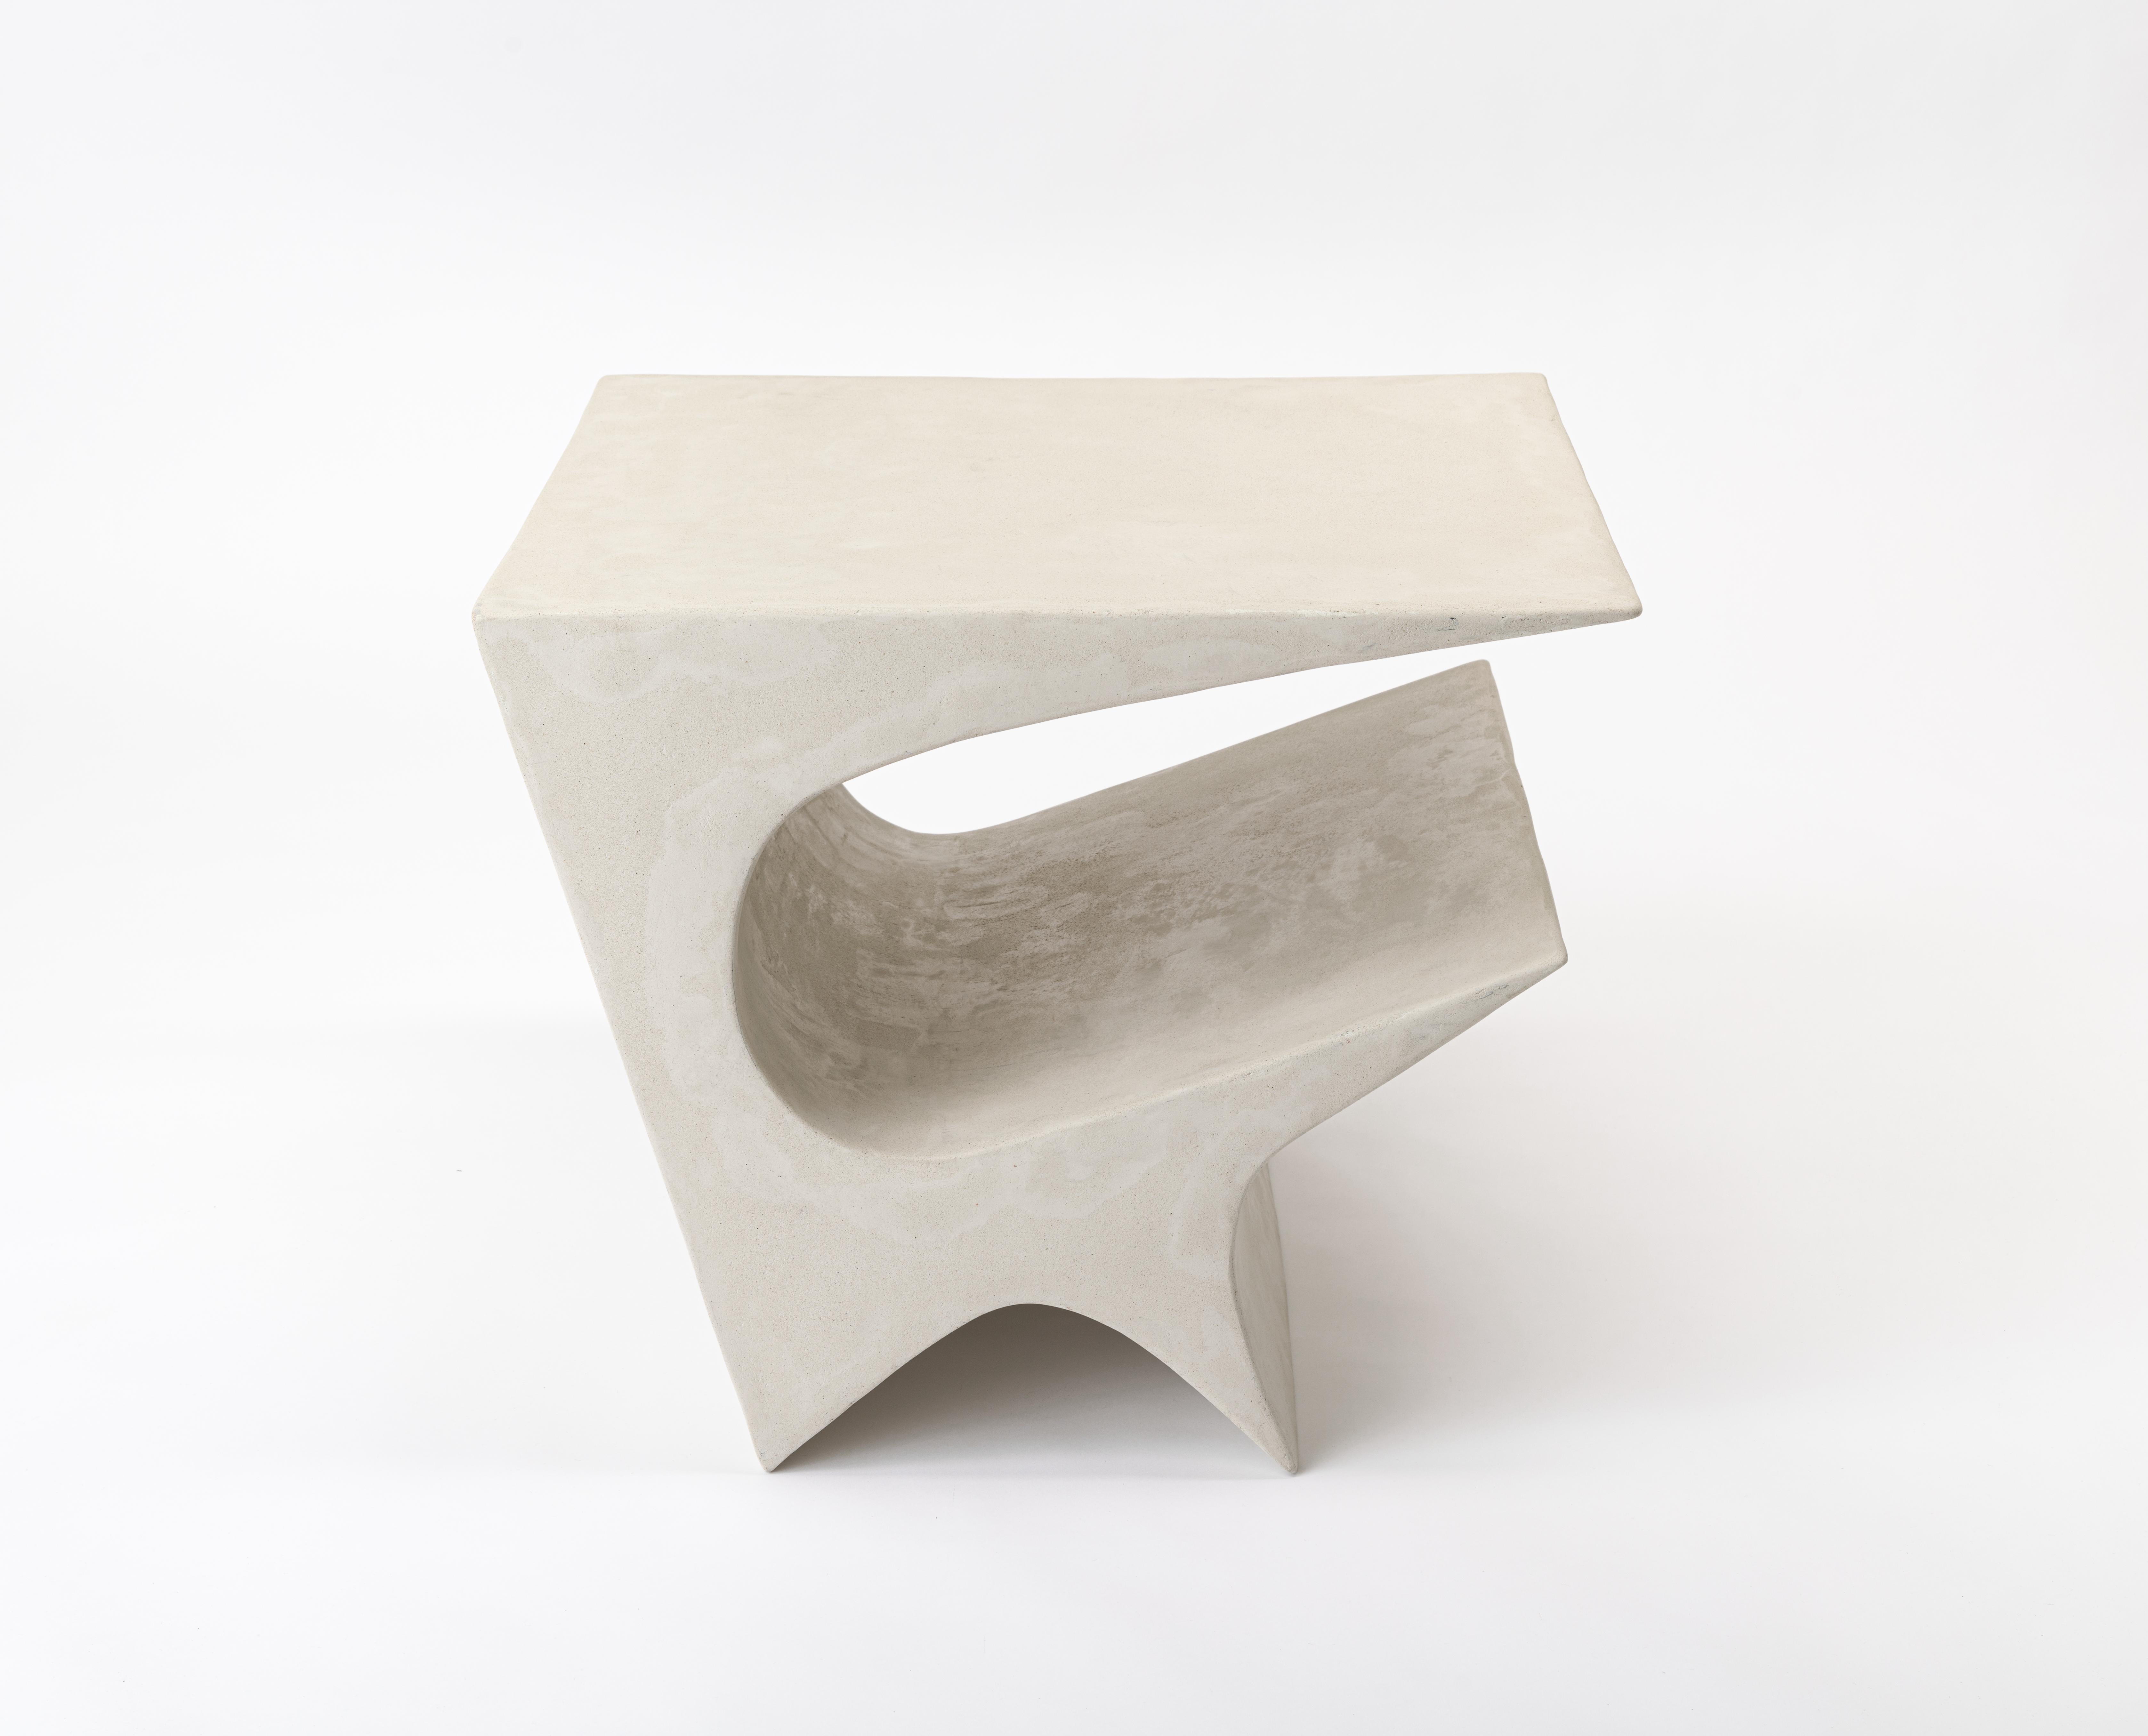 Cette table d'appoint moderne et minimaliste, conçue par l'artiste et designer primé Neal Aronowitz, est une sculpture puissante et une présence dynamique dans n'importe quelle pièce ! 
La collection Star Axis représente une autre forme ludique et